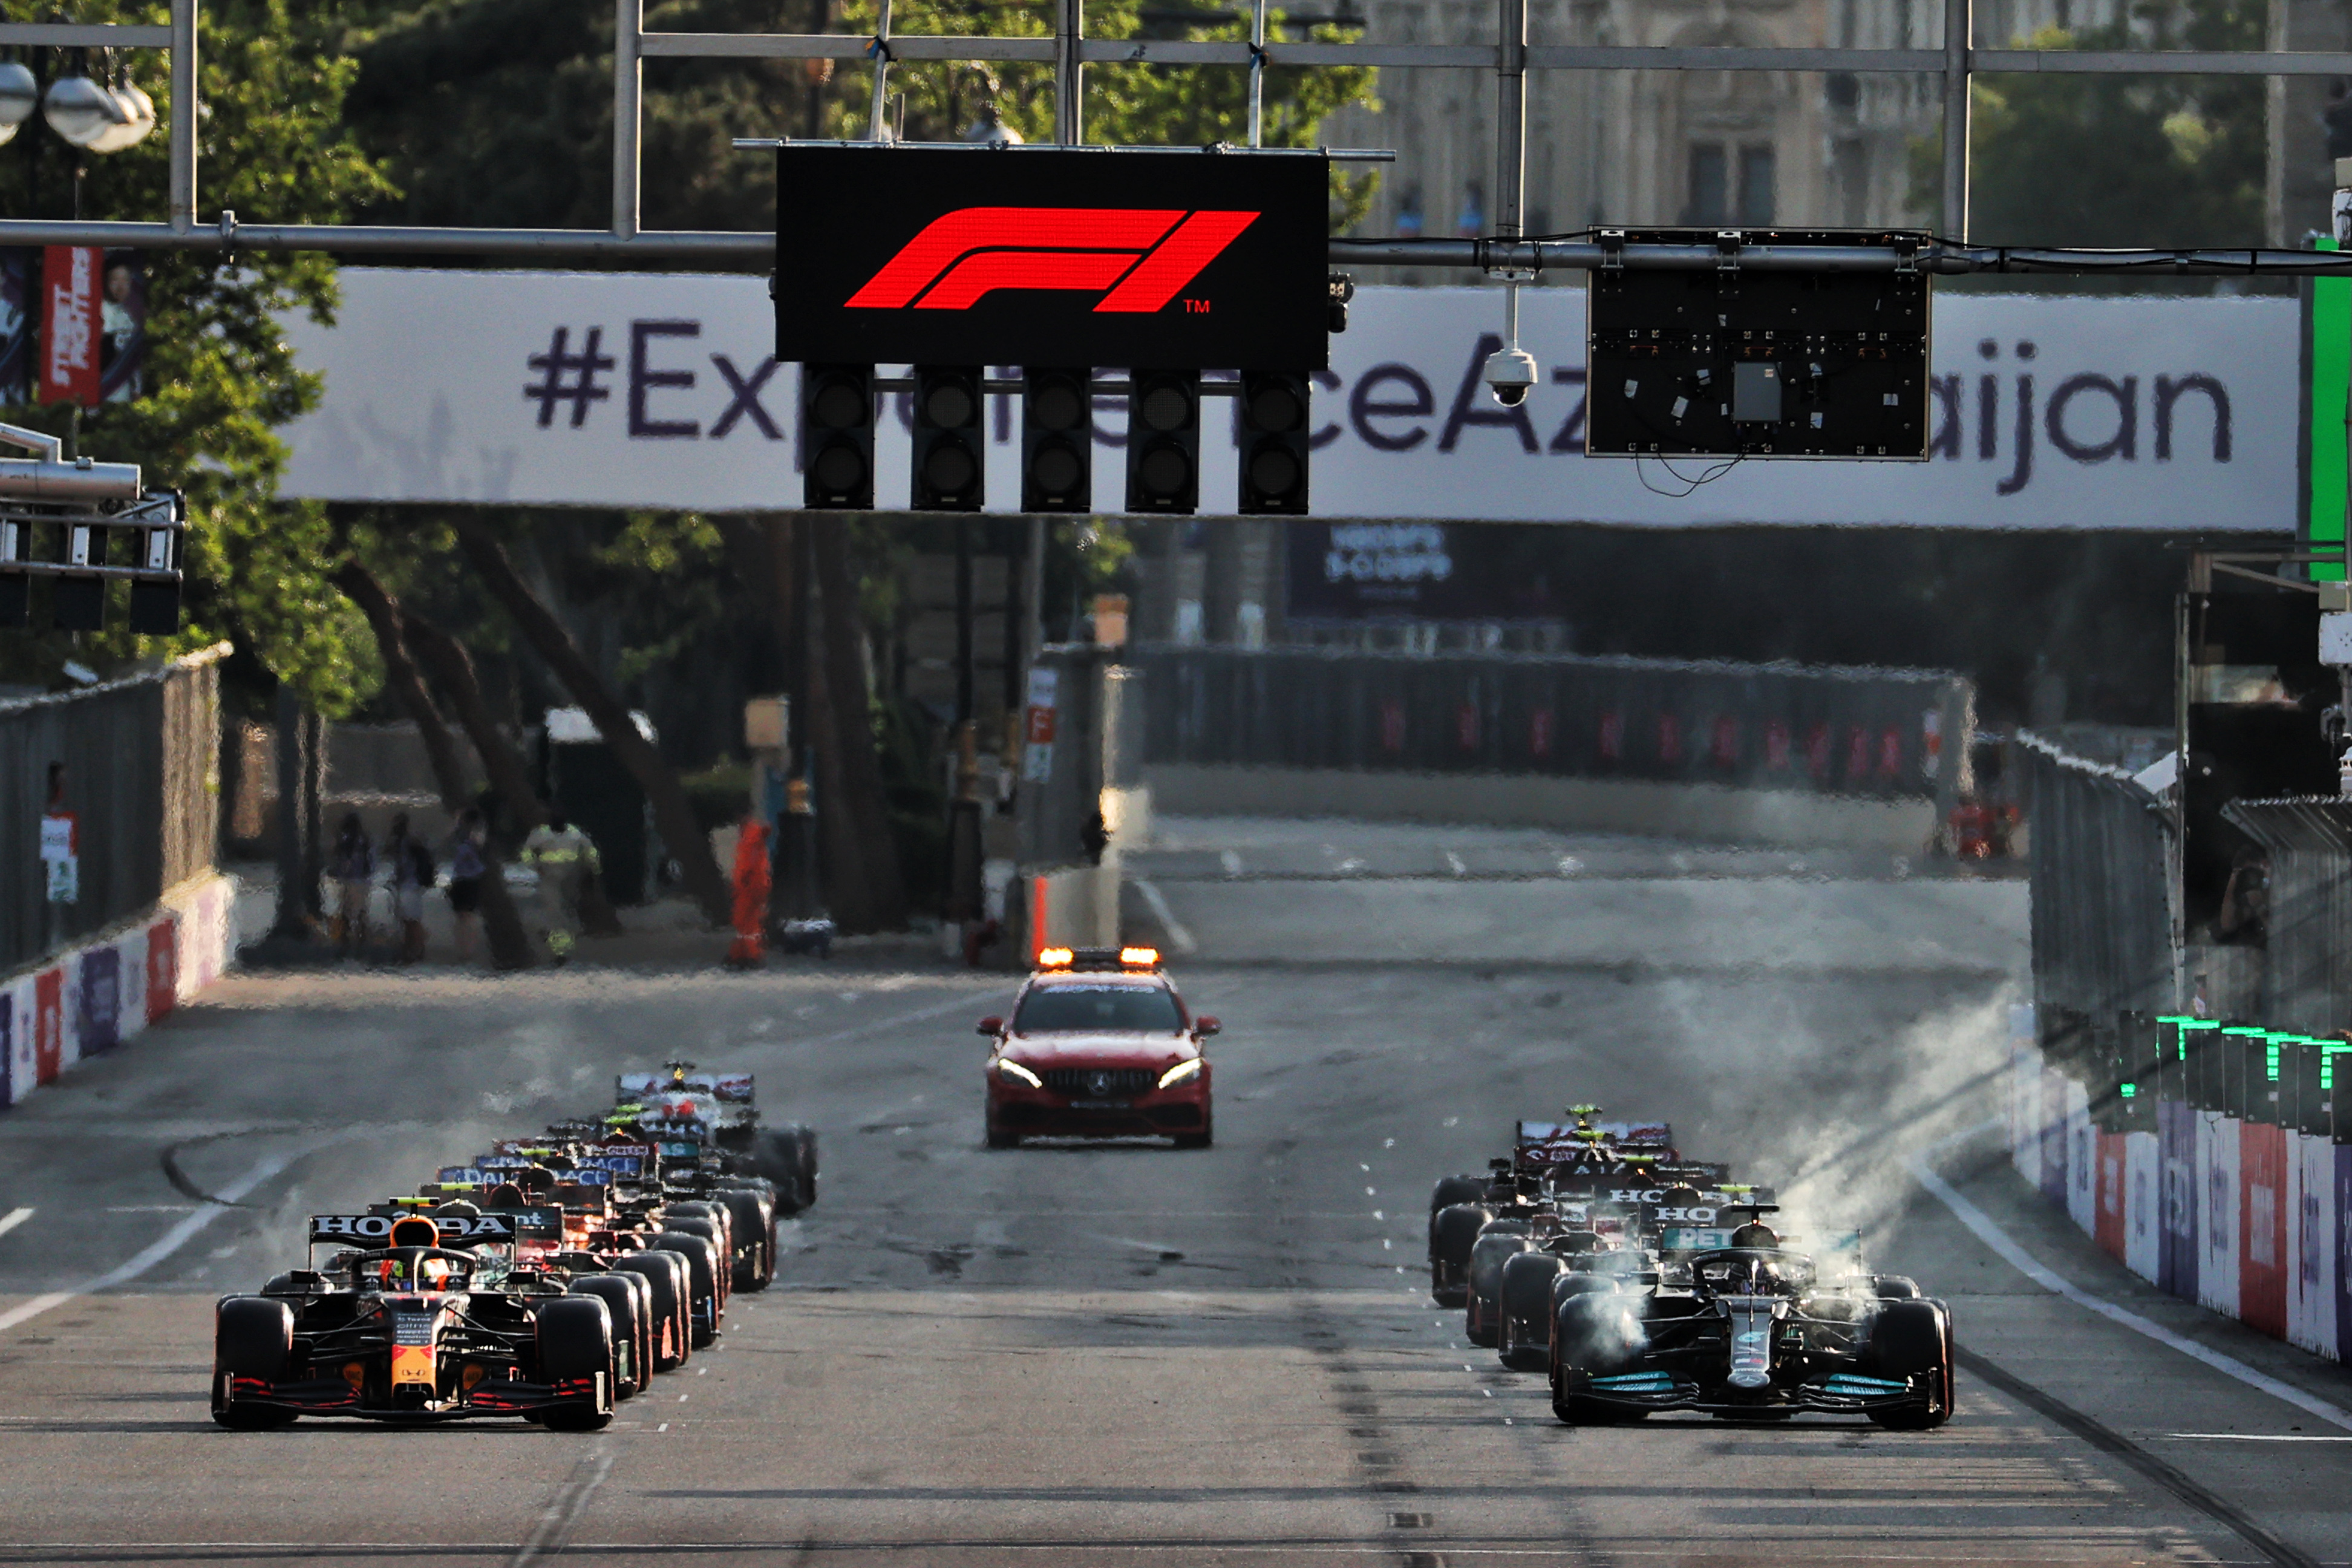 Azerbaijan Grand Prix restart Baku 2021